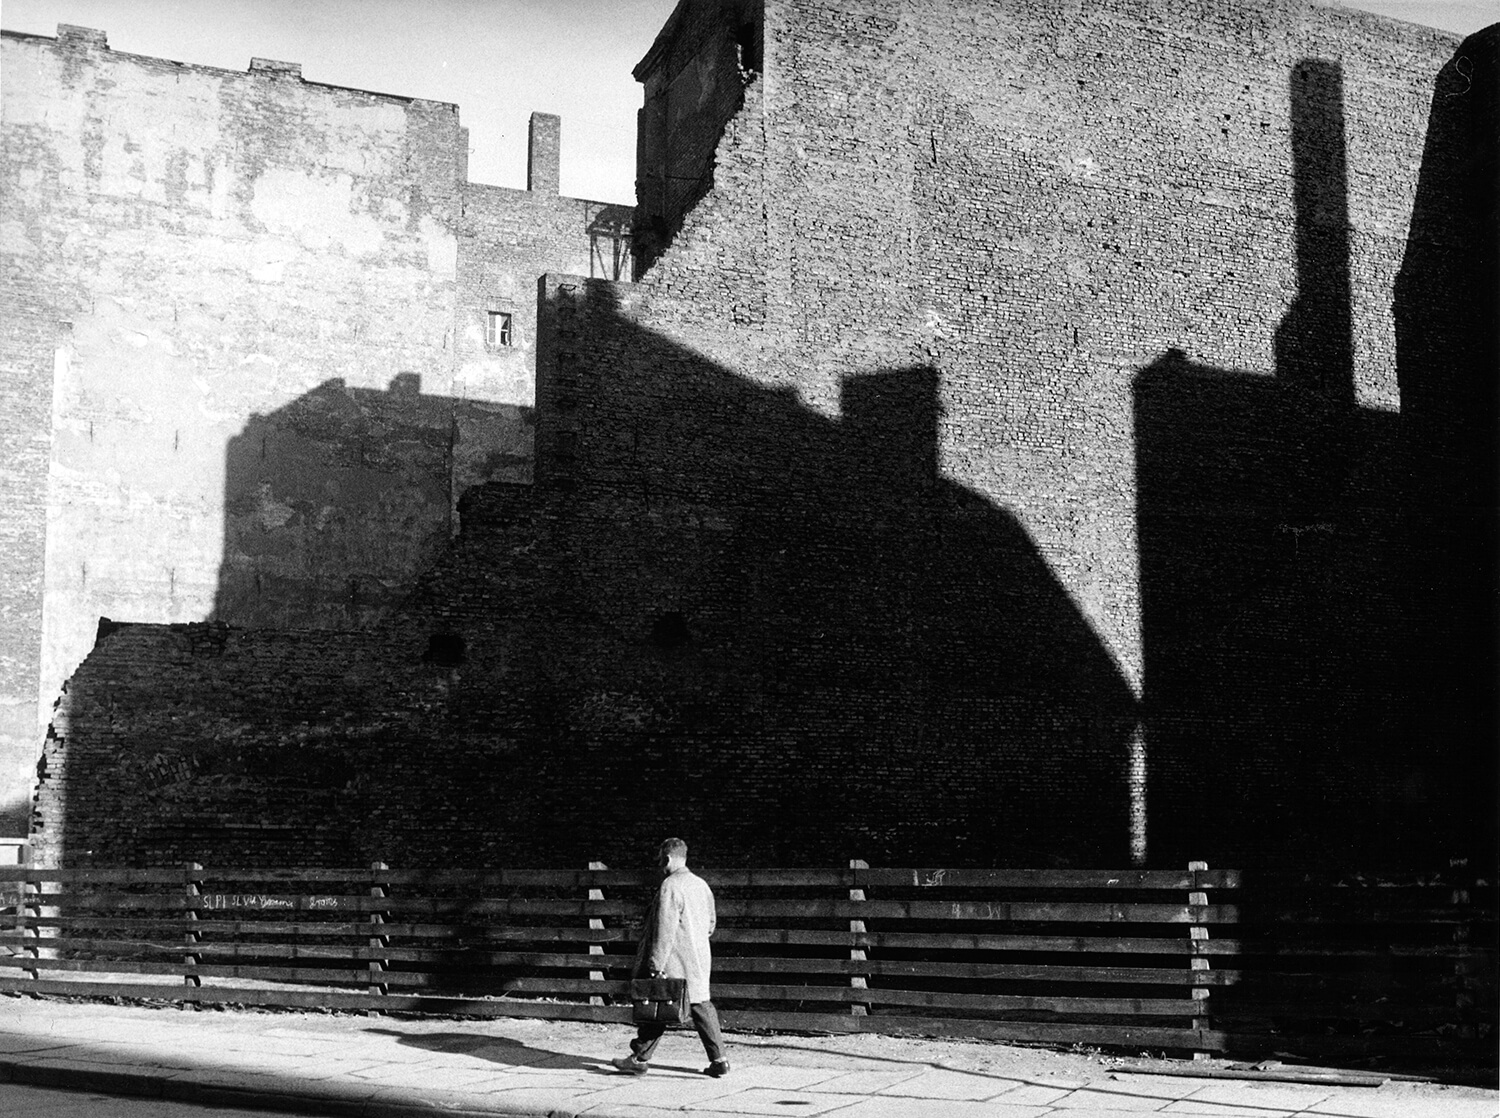 Bernard Larsson, Häuserschatten auf Brandmauern, Ost-Berlin, 1962, Silbergelatine auf Barytpapier, Vintage-Print